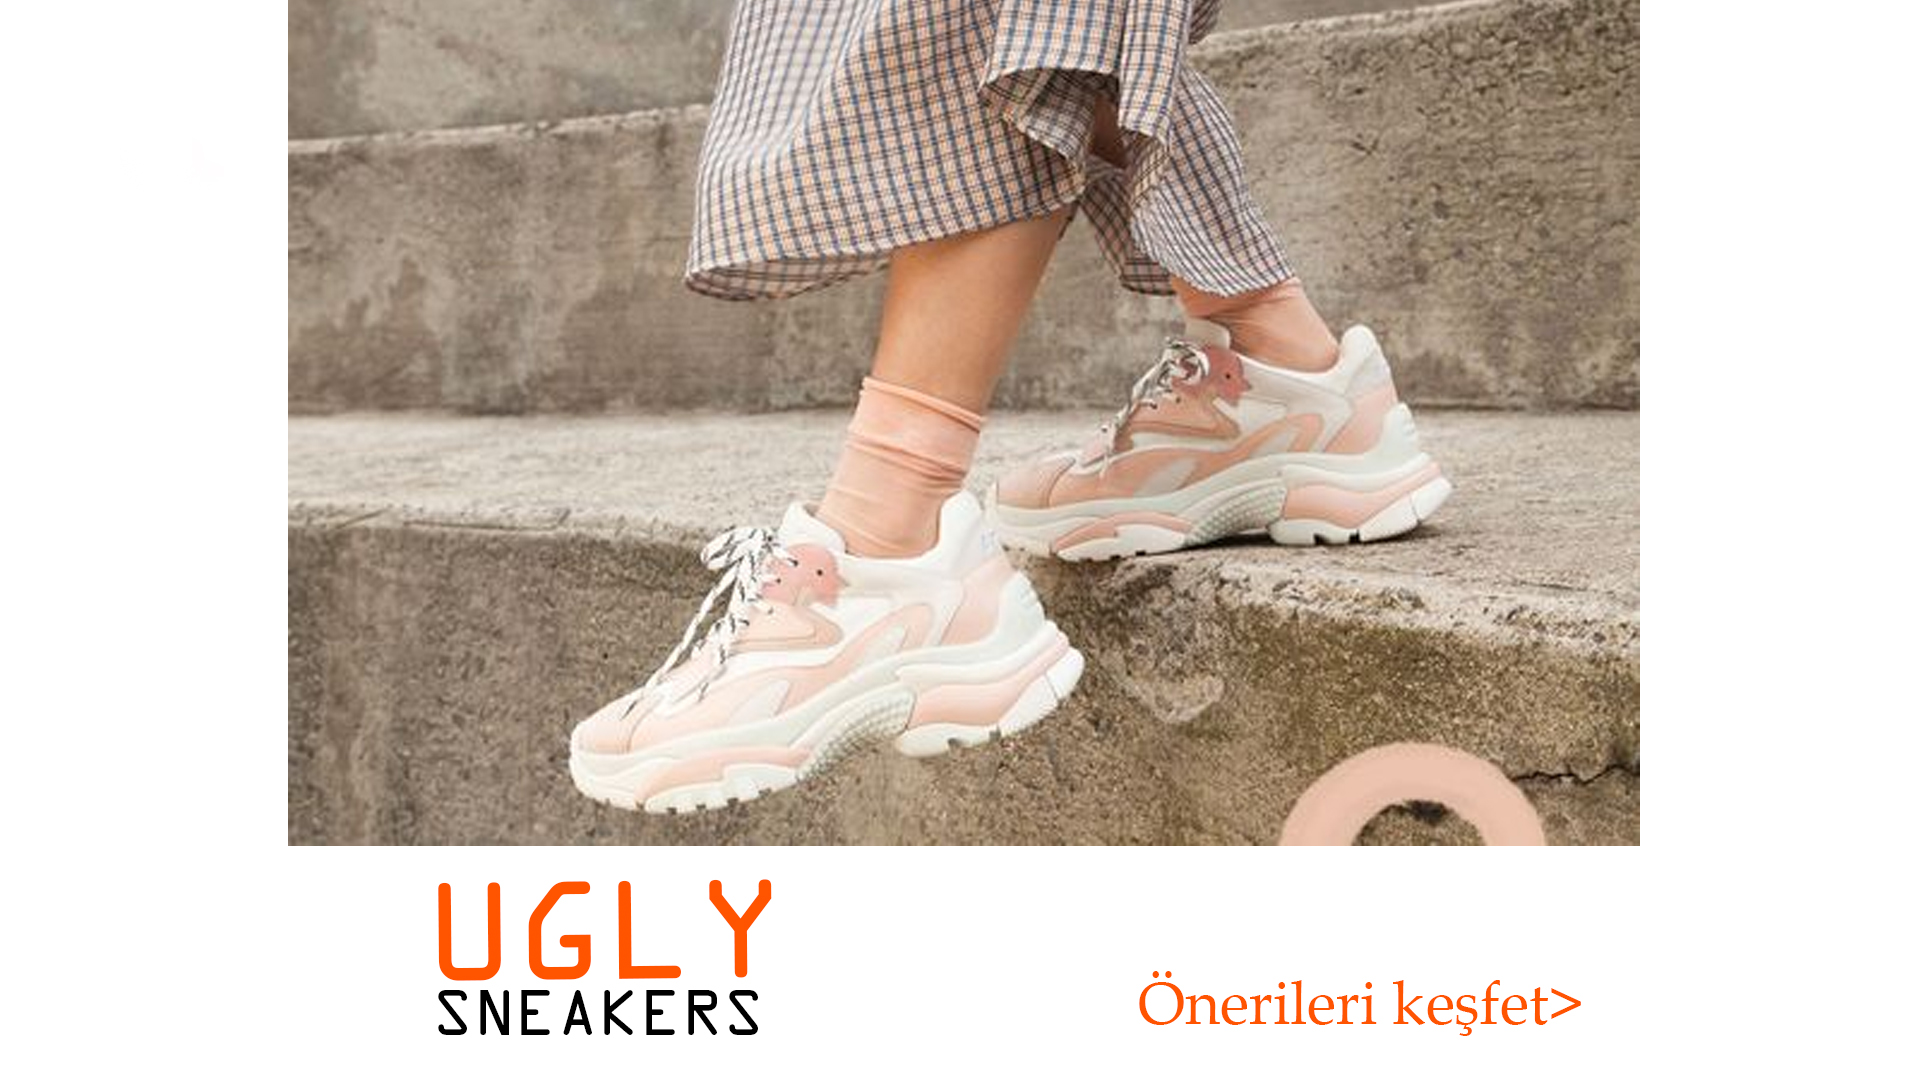 Ugly Sneakers ile Tamamlayabileceğiniz 